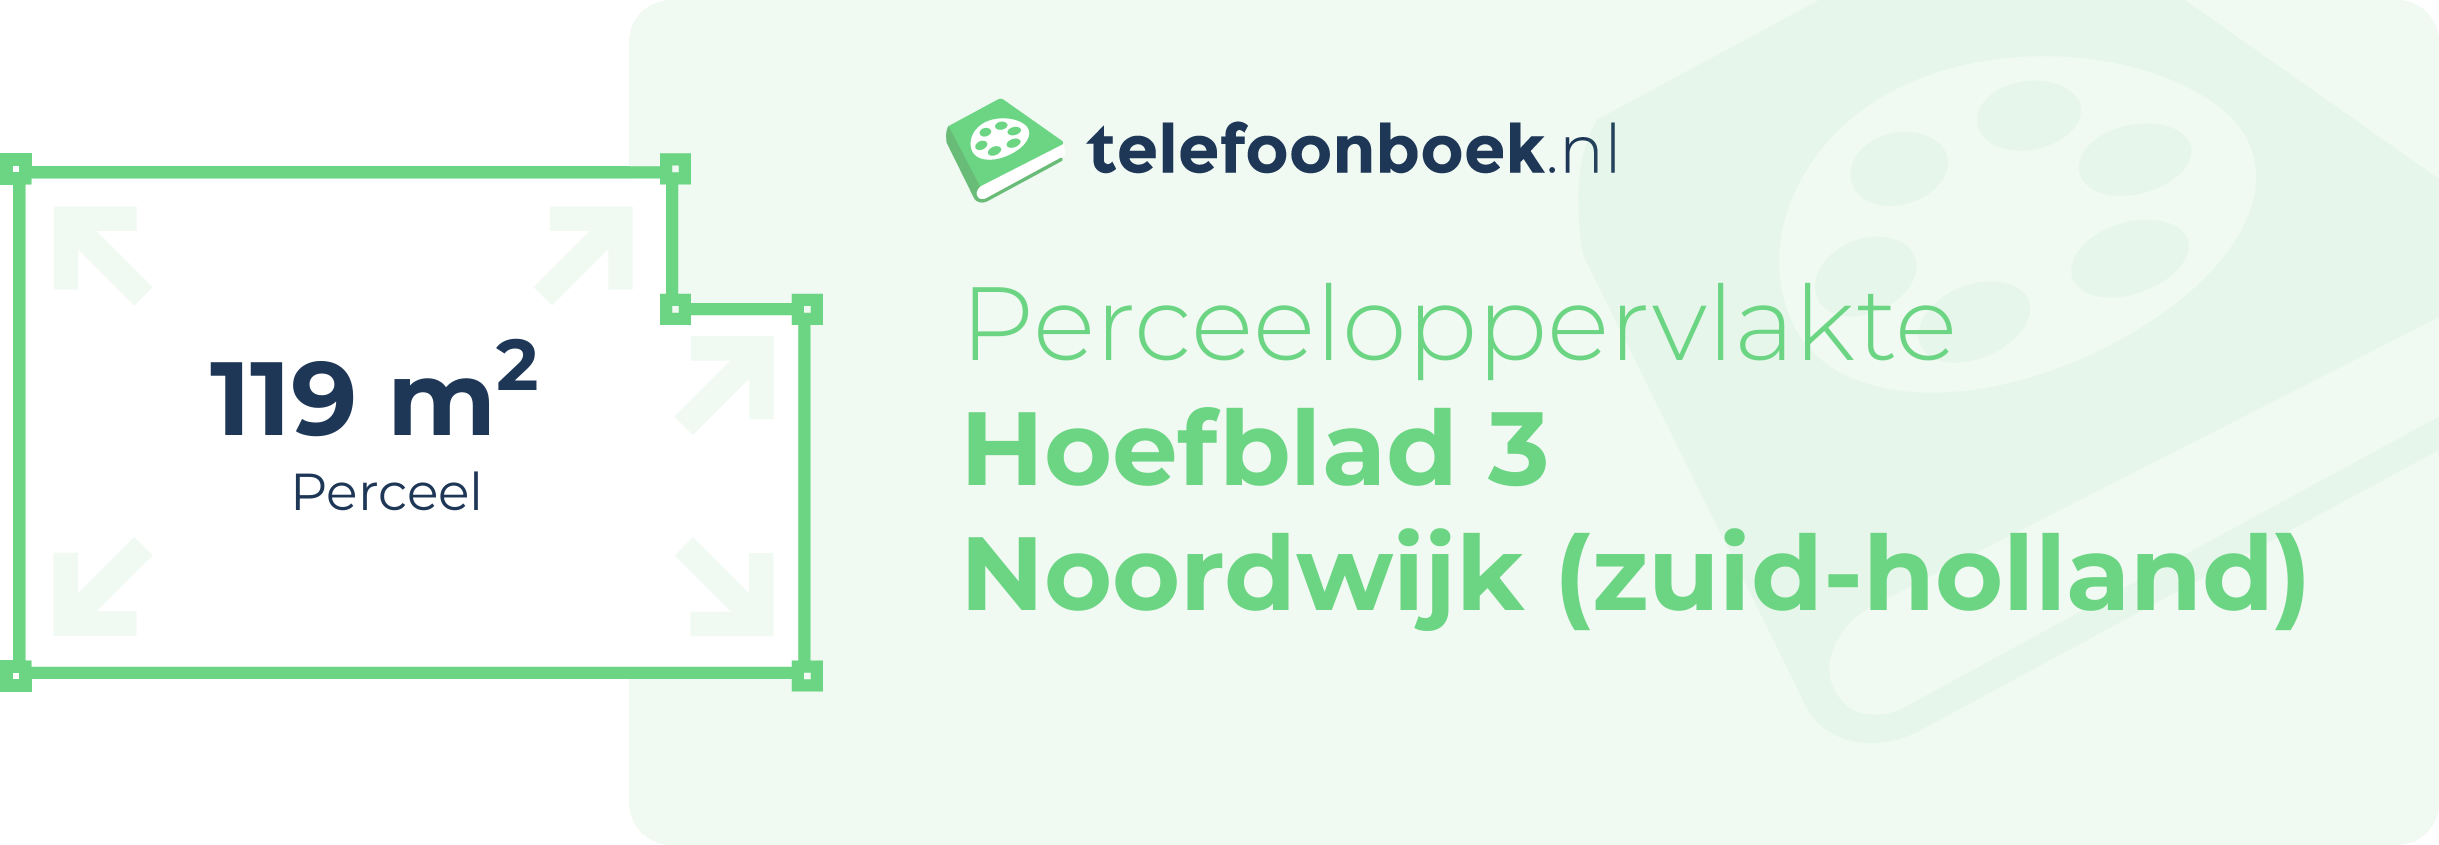 Perceeloppervlakte Hoefblad 3 Noordwijk (Zuid-Holland)